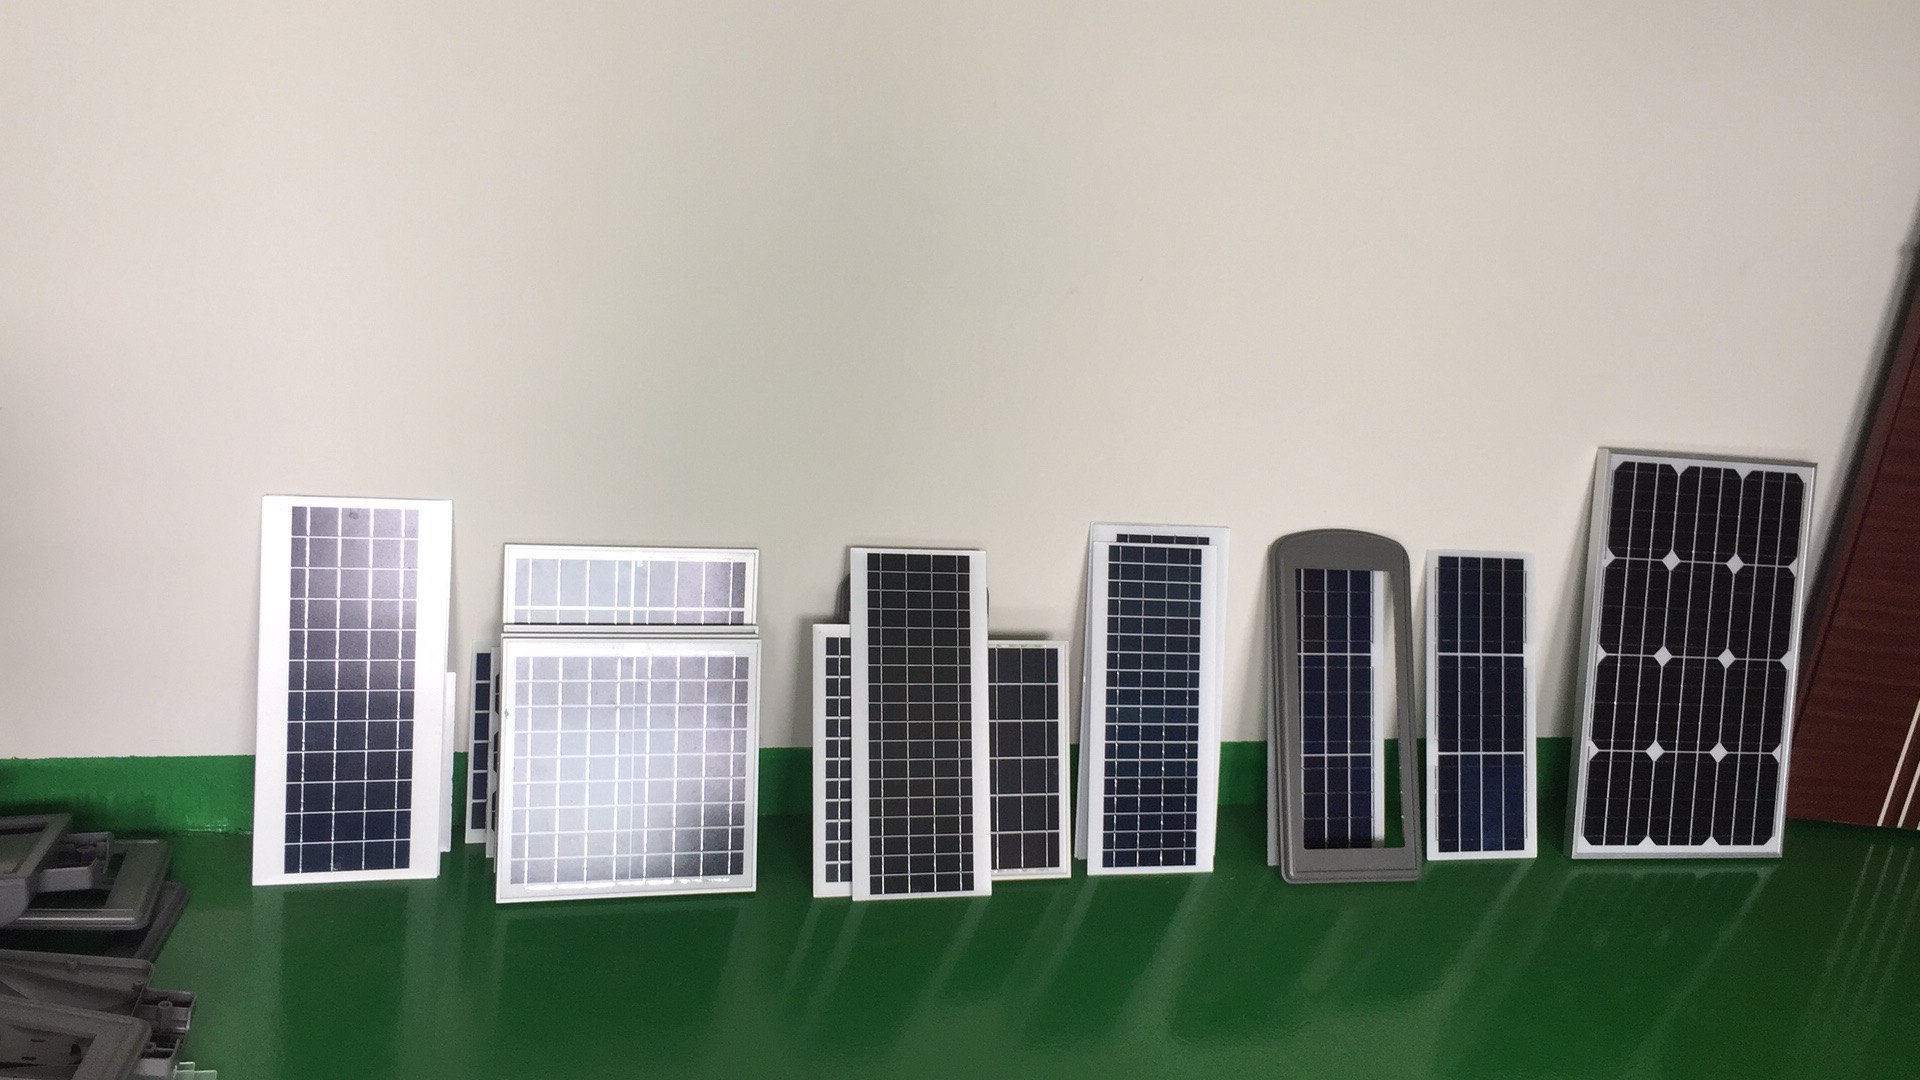 光伏太阳能板 光伏太阳能板厂家 中山光伏太阳能板 中山光伏太阳能板厂家 光伏太阳能板厂家直销 光伏太阳能板生产厂家